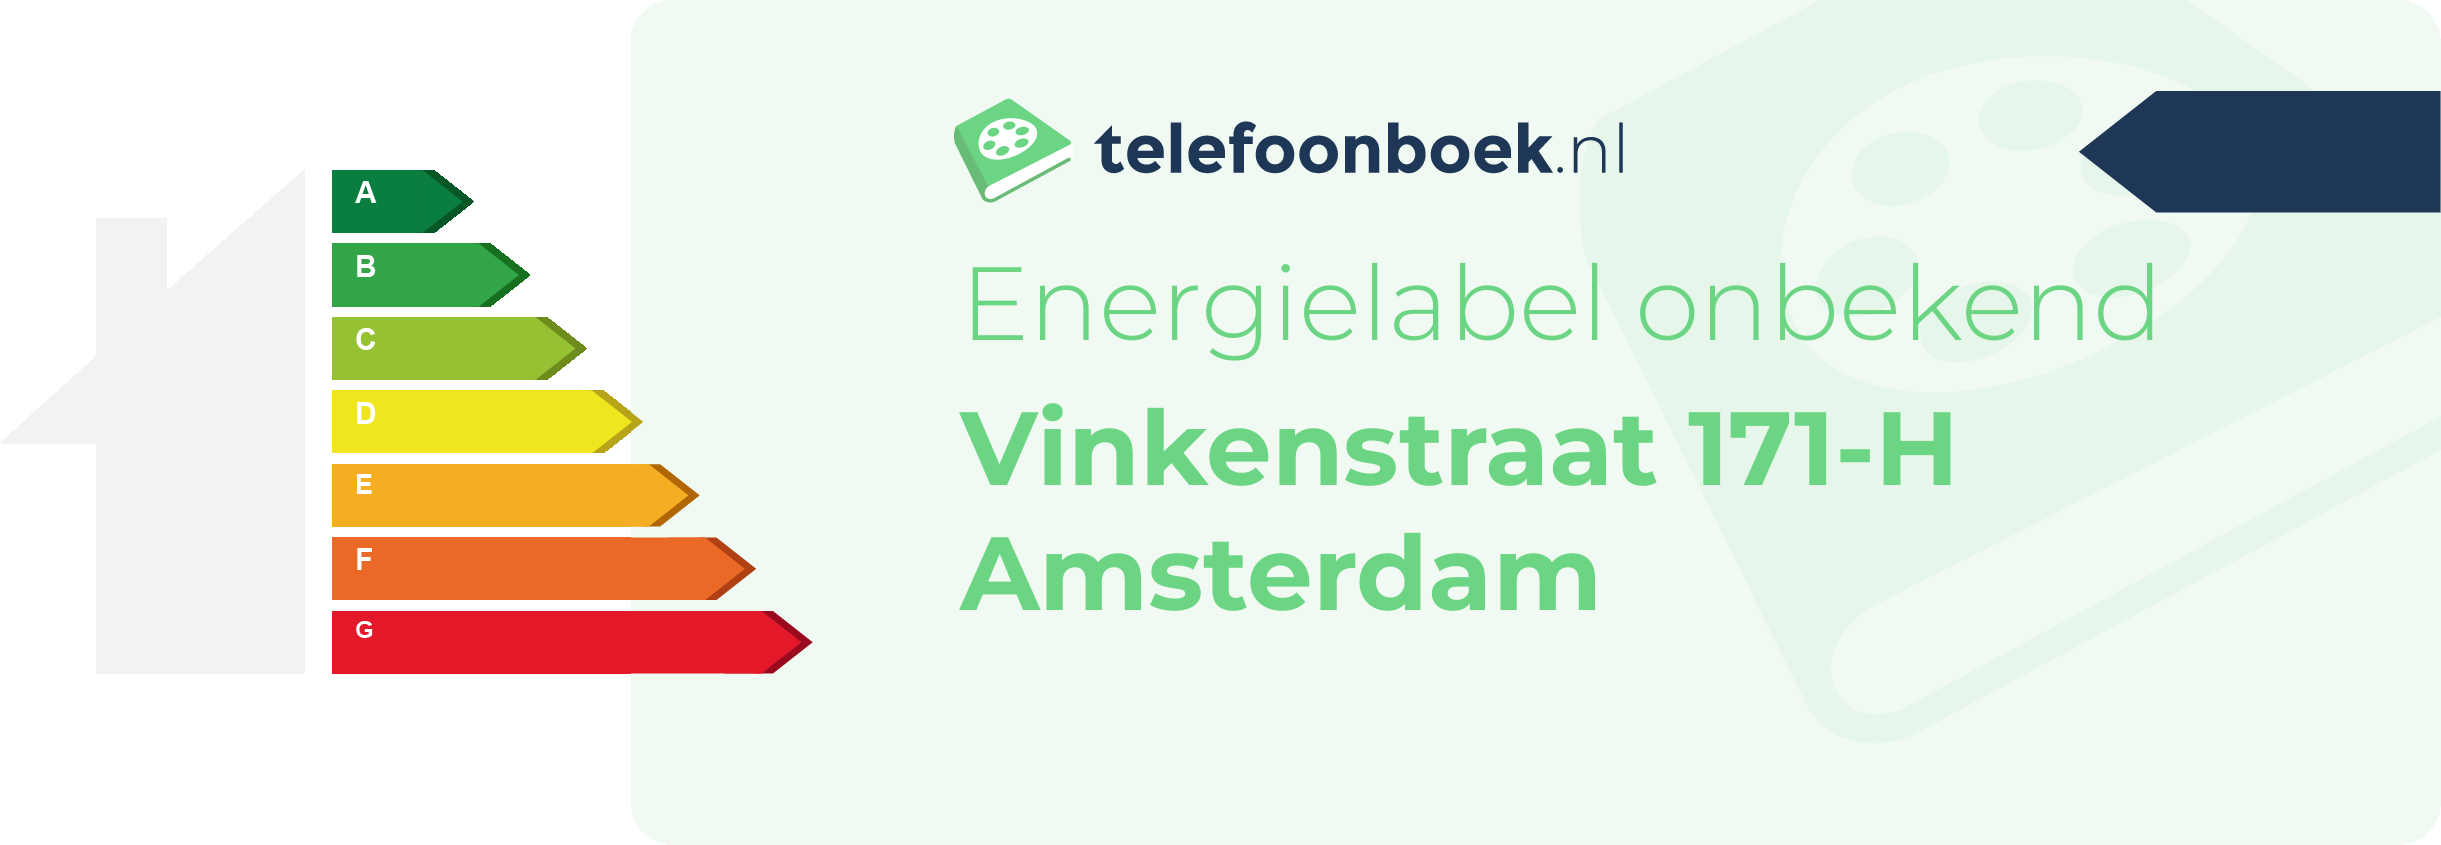 Energielabel Vinkenstraat 171-H Amsterdam